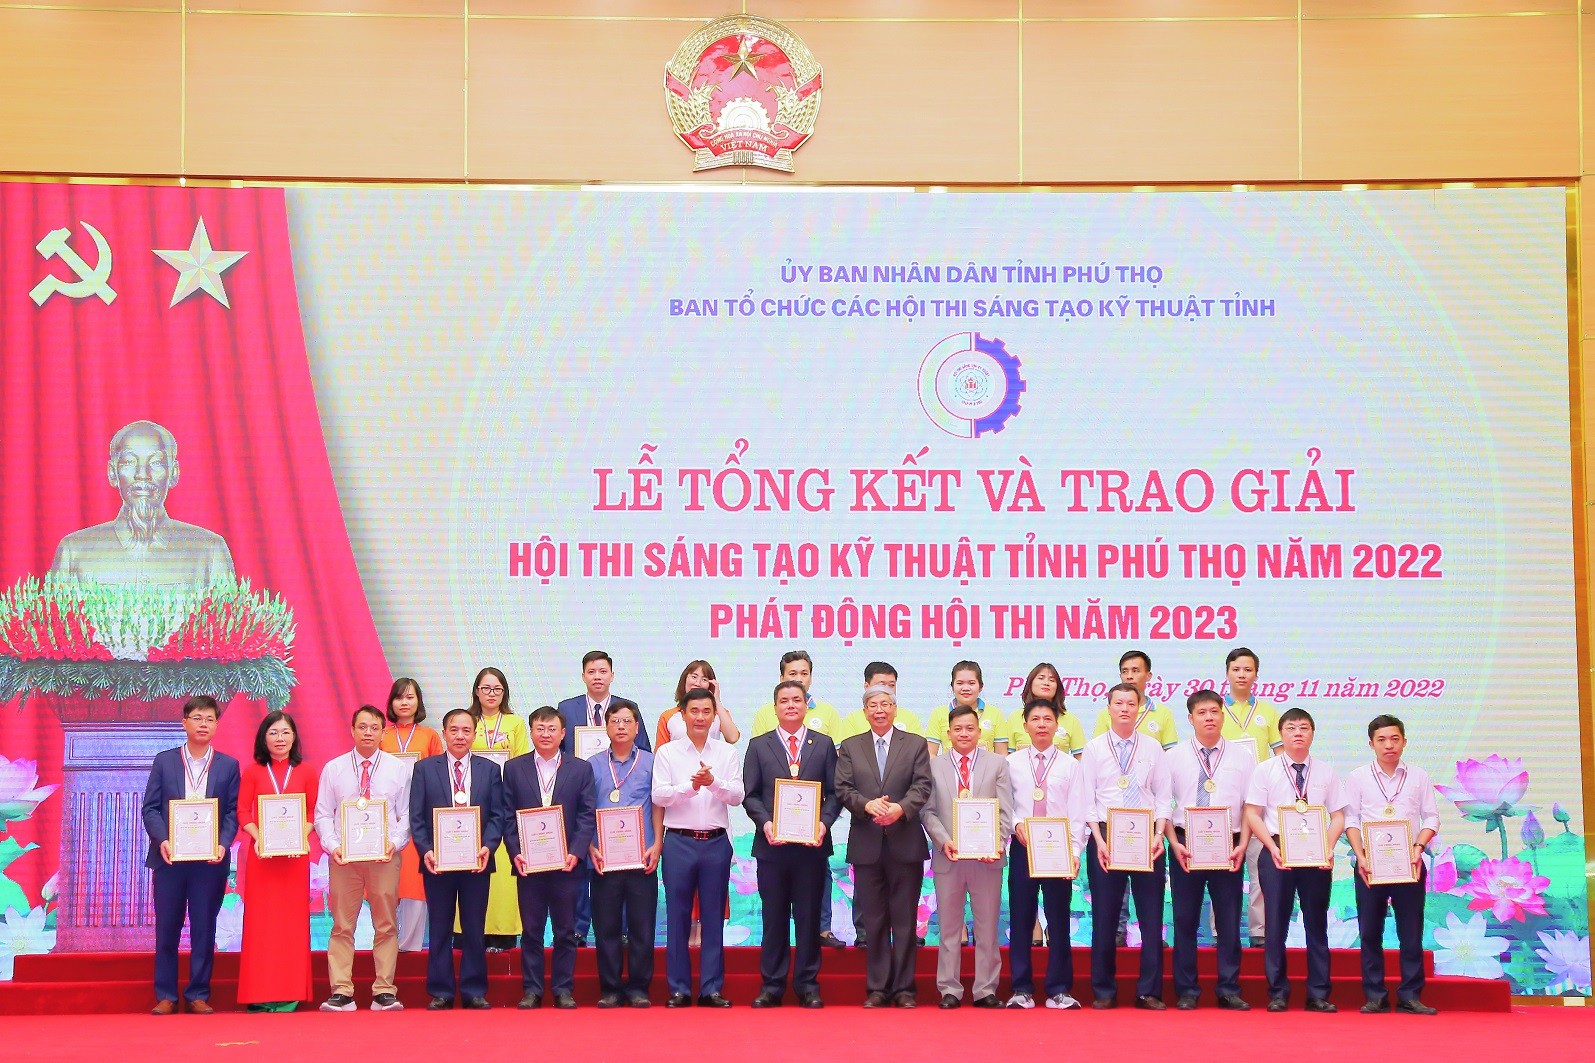 Supe Lâm Thao đạt Giải Nhất và Giải Khuyến Khích “Hội thi sáng tạo kỹ thuật tỉnh Phú Thọ năm 2022”